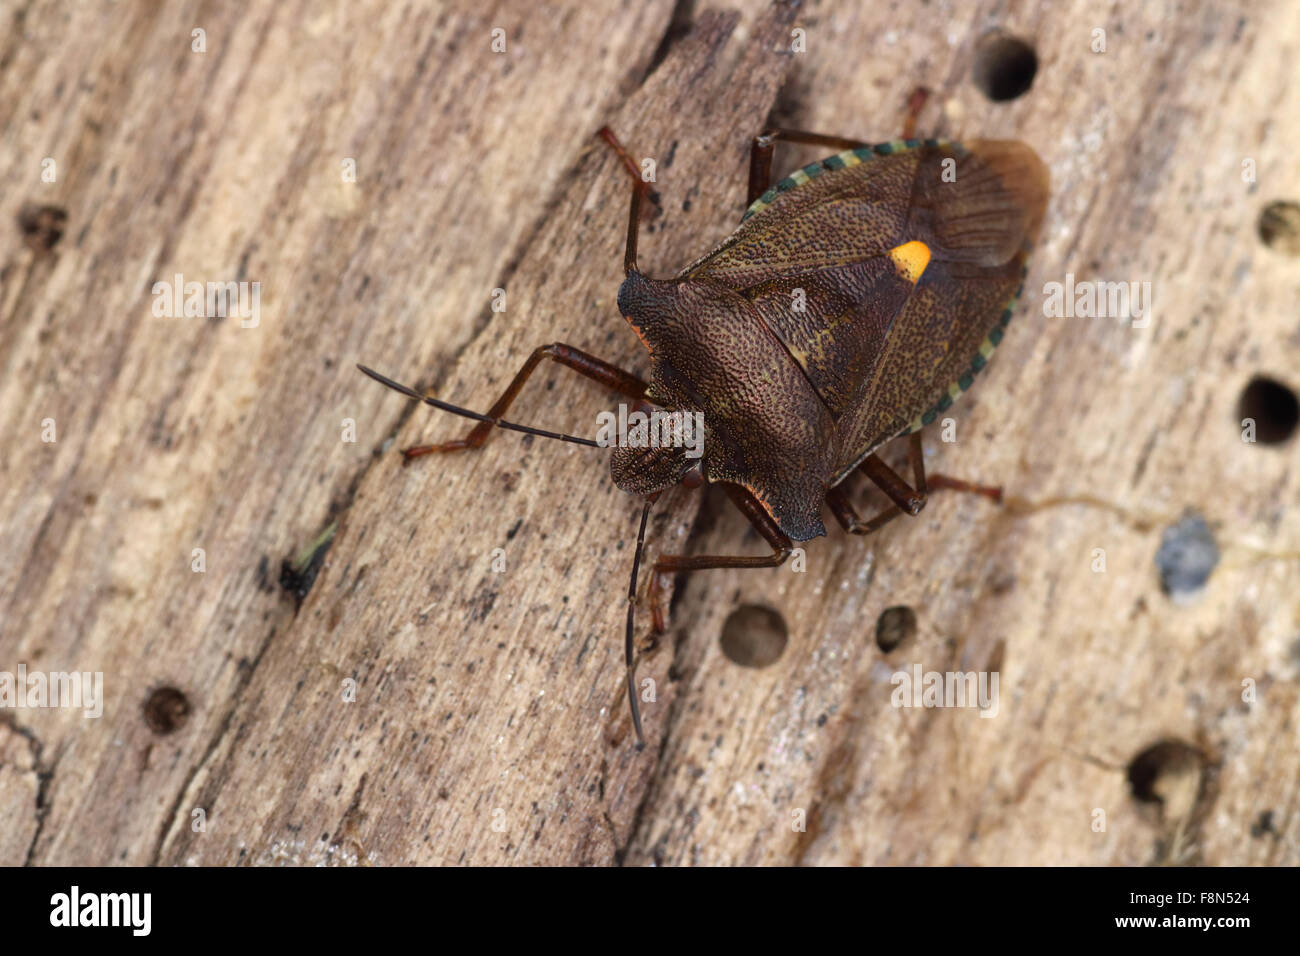 Red Legged Shieldbug pentatoma rufipes crawling on rotten wood Stock Photo